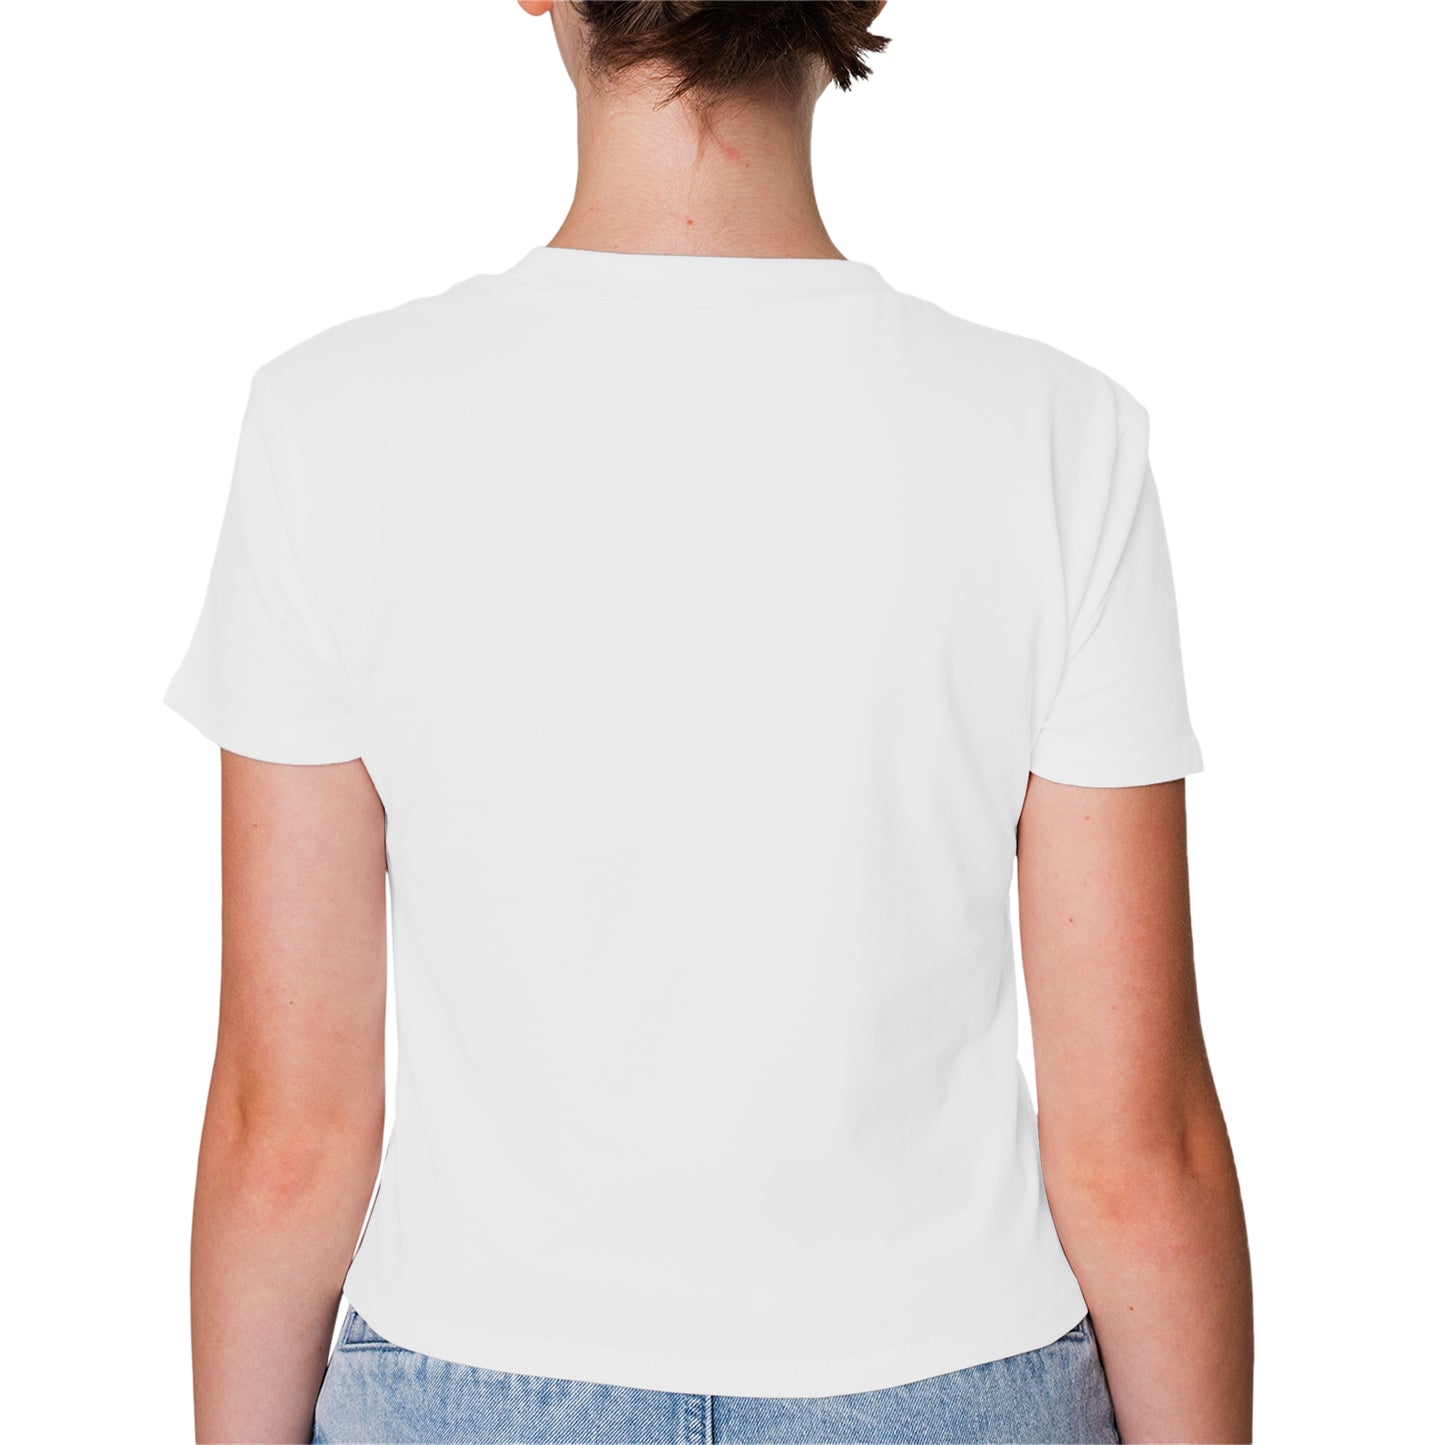 White T-Shirt For Women - FlyingCart.pk